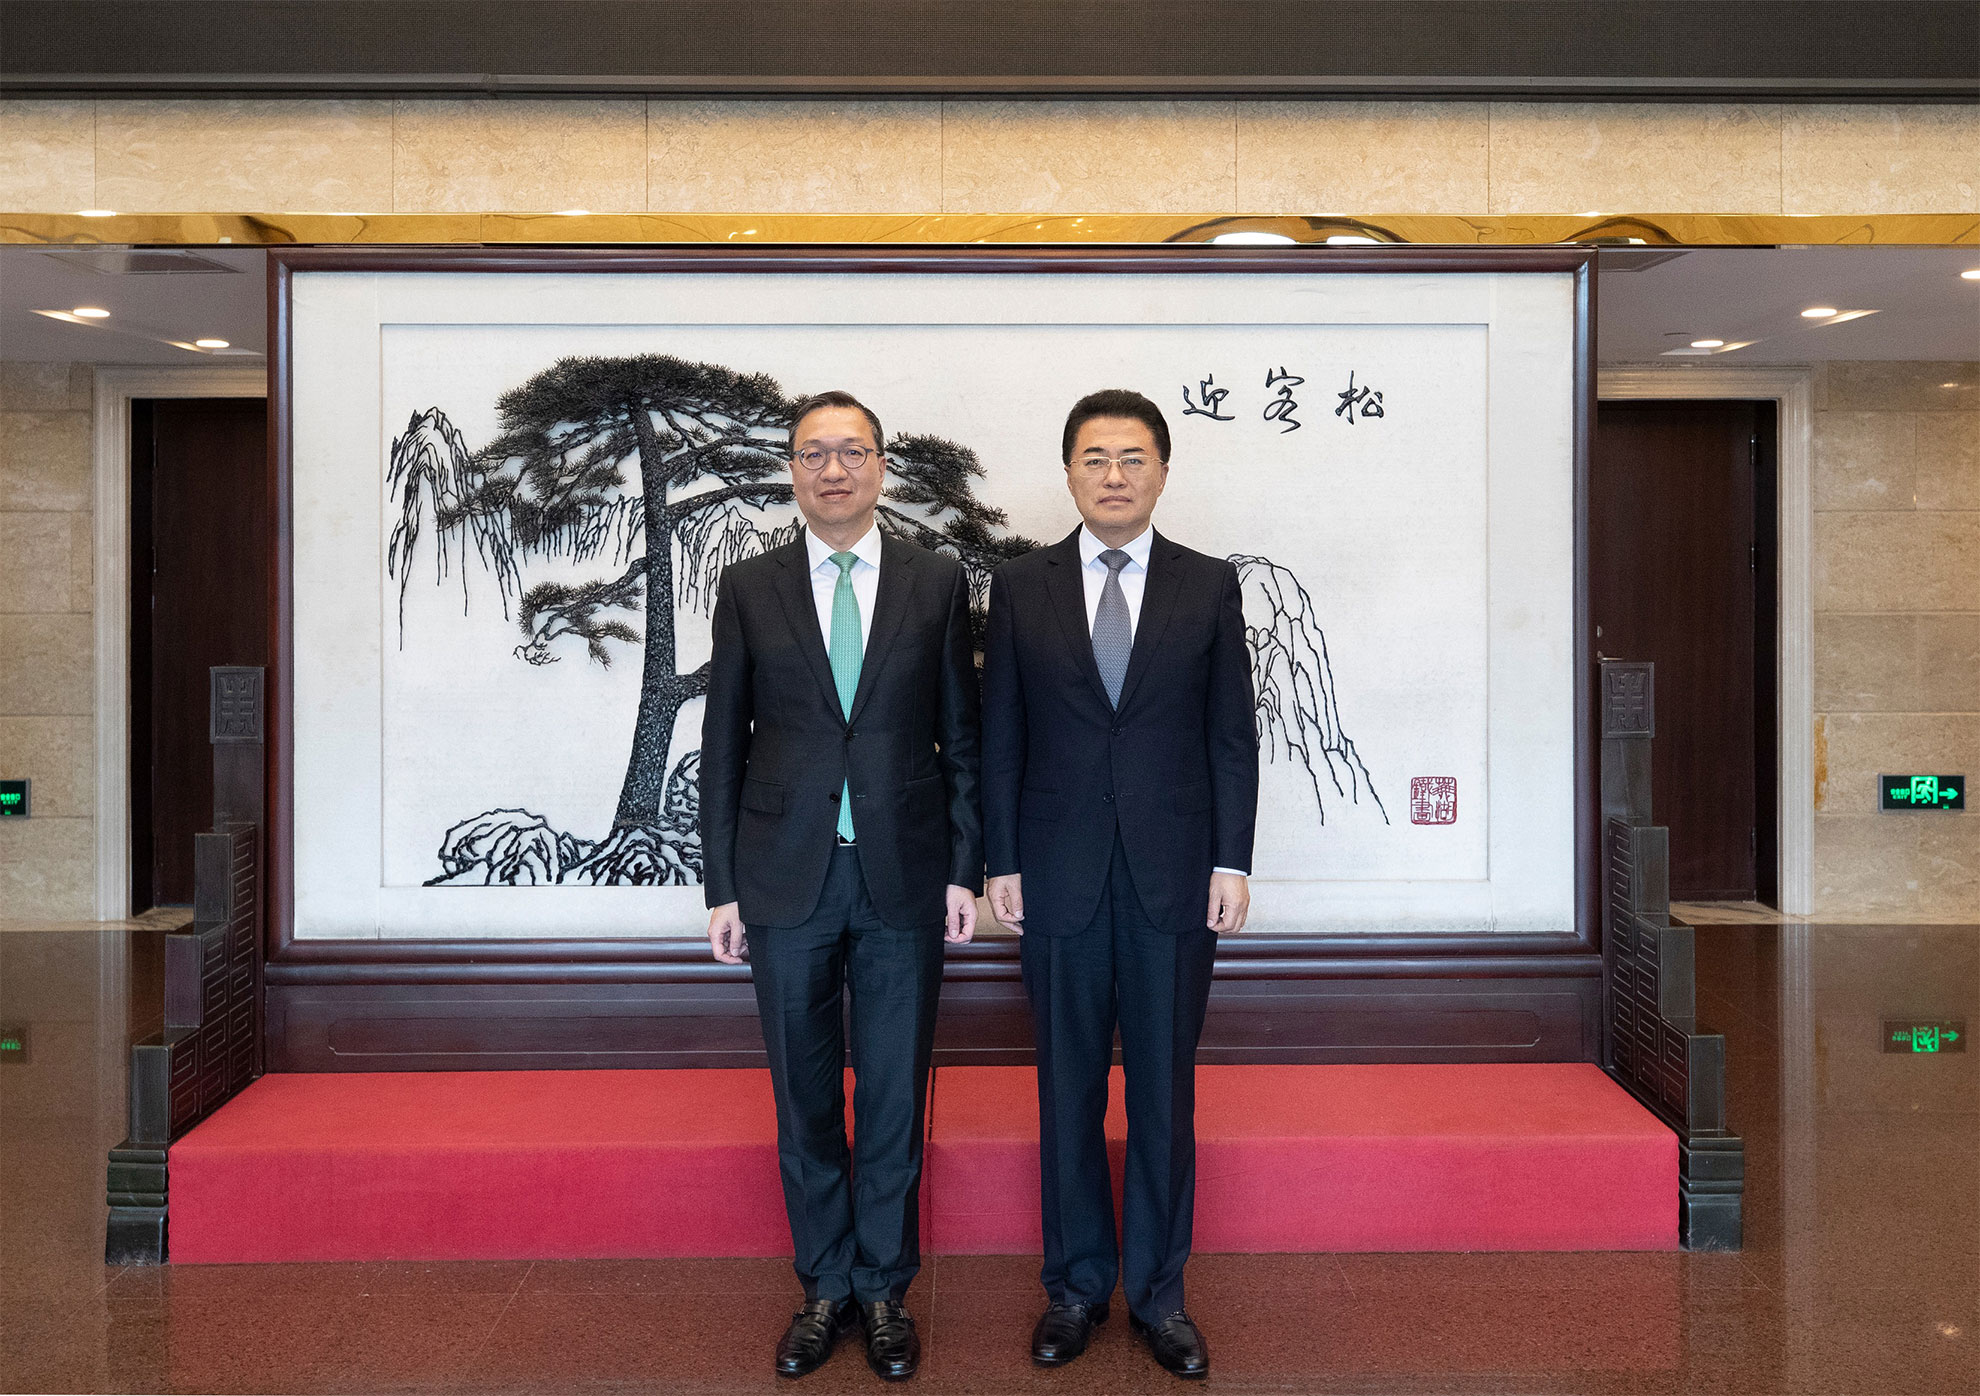 律政司司長林定國資深大律師（左）五月二十九日下午在北京到訪國務院國有資產監督管理委員會（國資委），與國資委副主任翁杰明（右）會面。圖示二人在會議前合照。